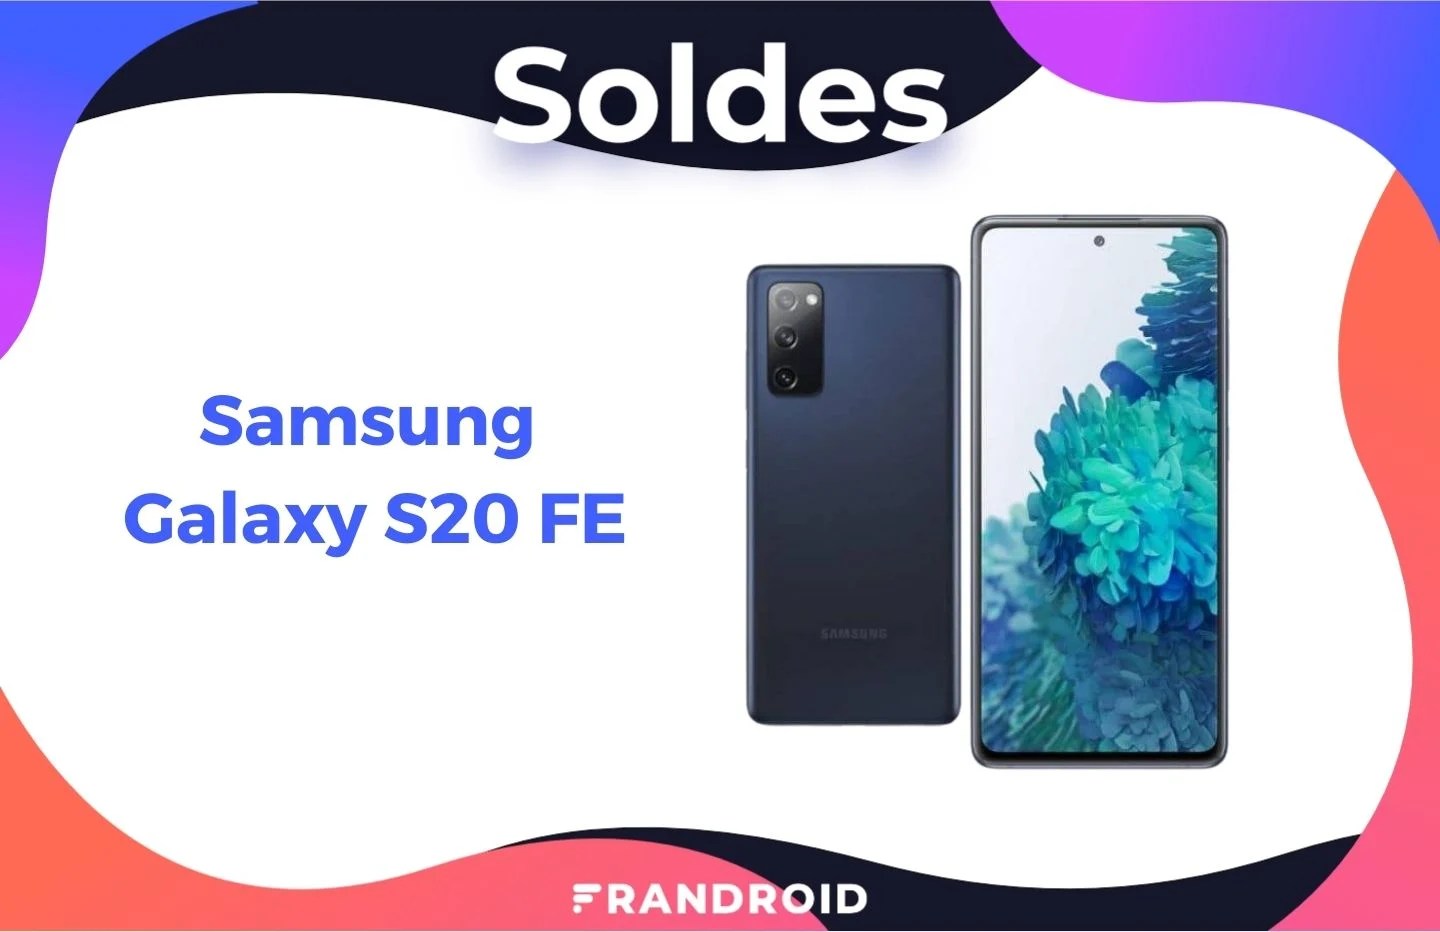 Le Samsung Galaxy S20 FE est de retour à un super prix pour les soldes